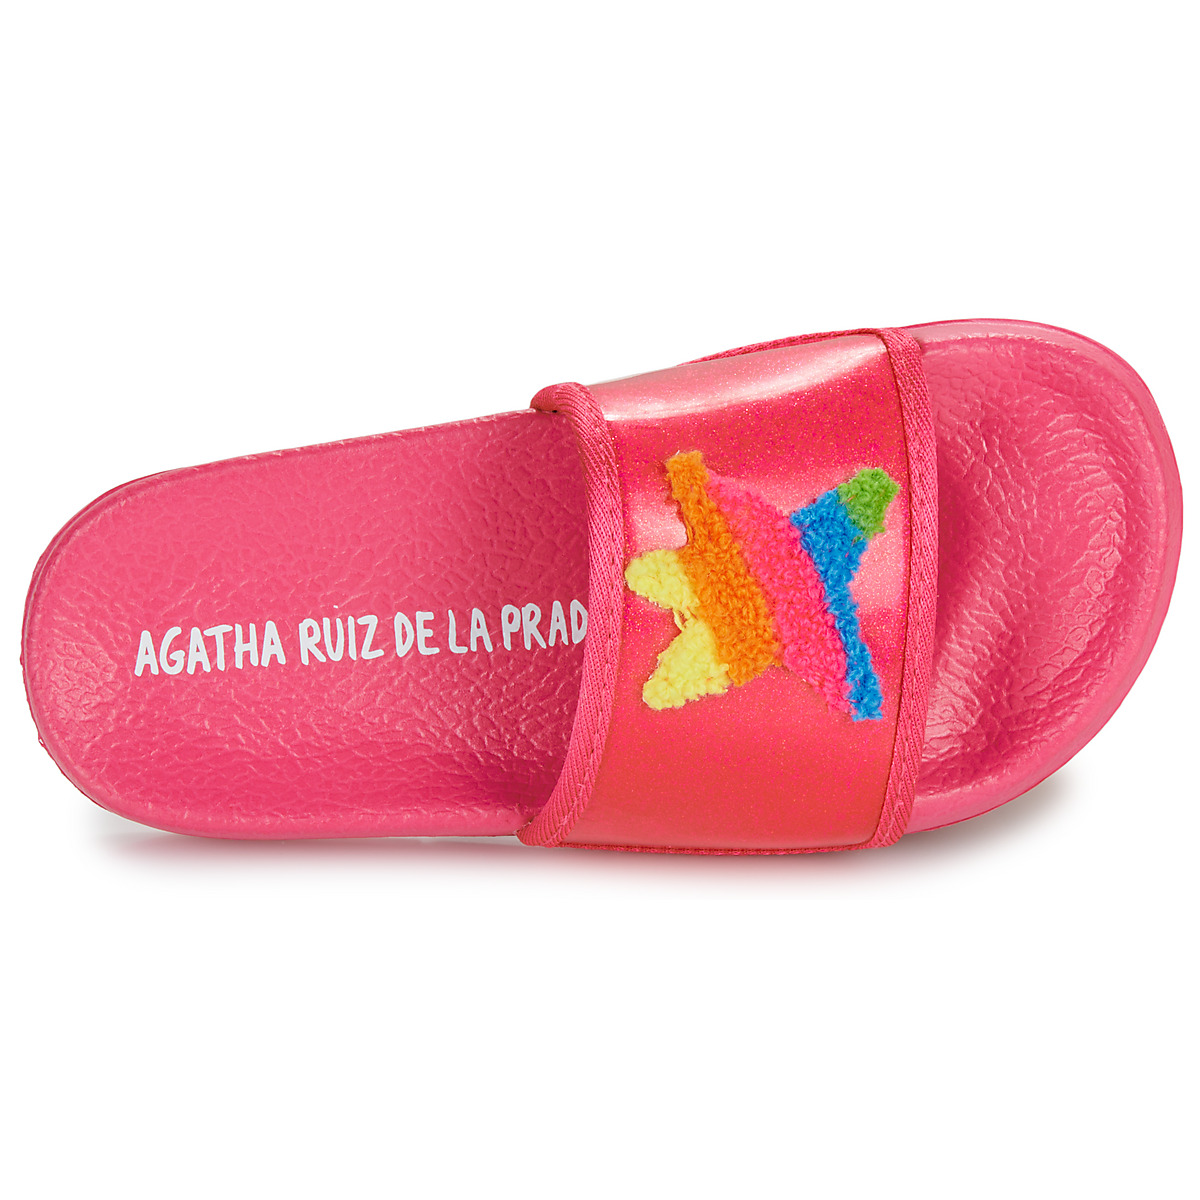 Agatha Ruiz de la Prada Rose / Multicolore FLIP FLOP ESTRELLA CbsAUjXY